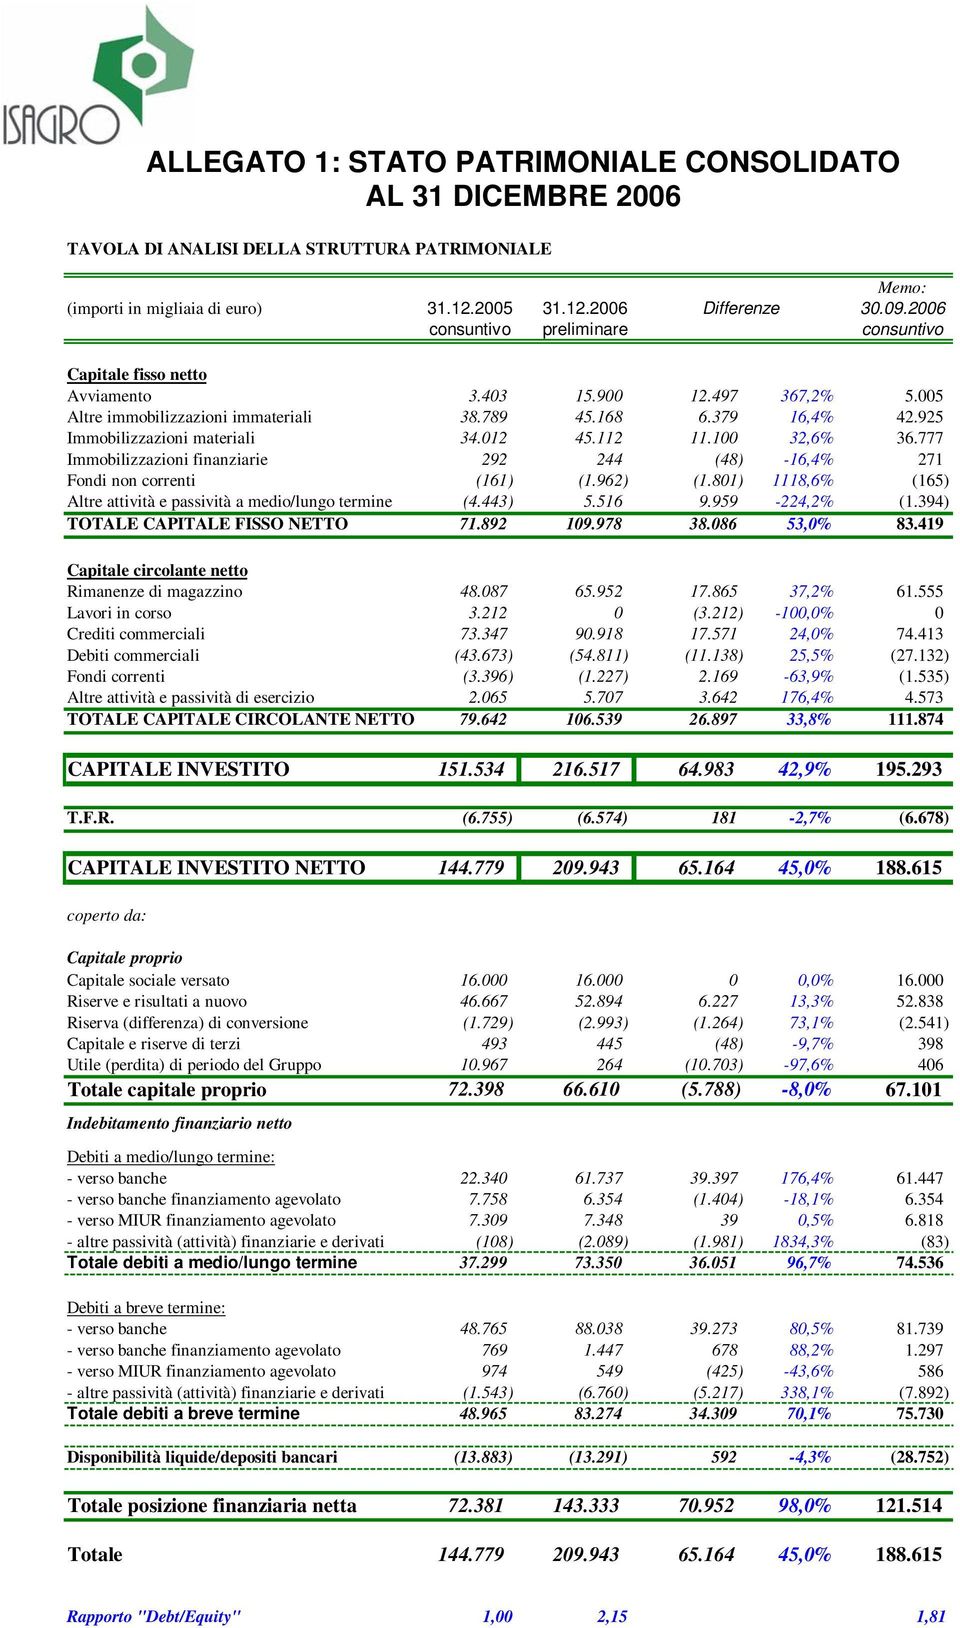 925 Immobilizzazioni materiali 34.012 45.112 11.100 32,6% 36.777 Immobilizzazioni finanziarie 292 244 (48) -16,4% 271 Fondi non correnti (161) (1.962) (1.